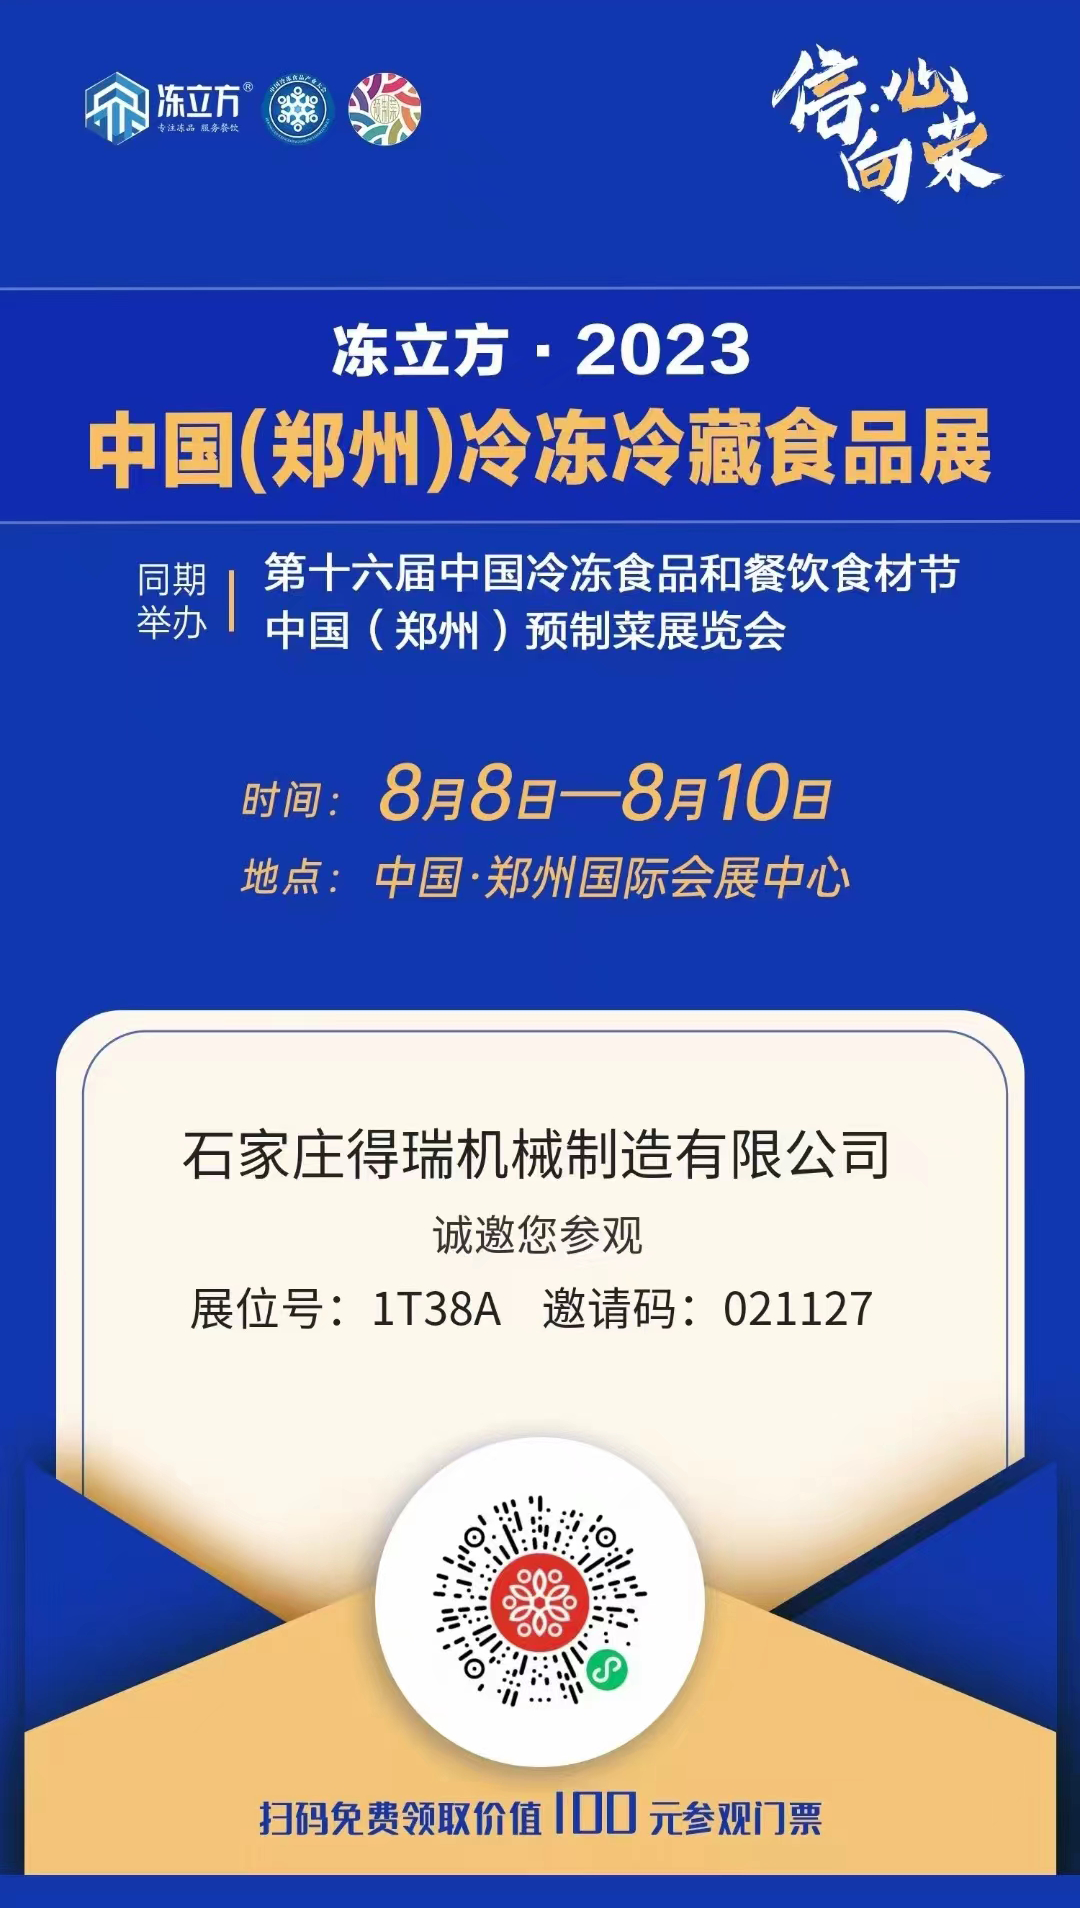 凍立方.2023中國鄭州冷凍冷藏食品展